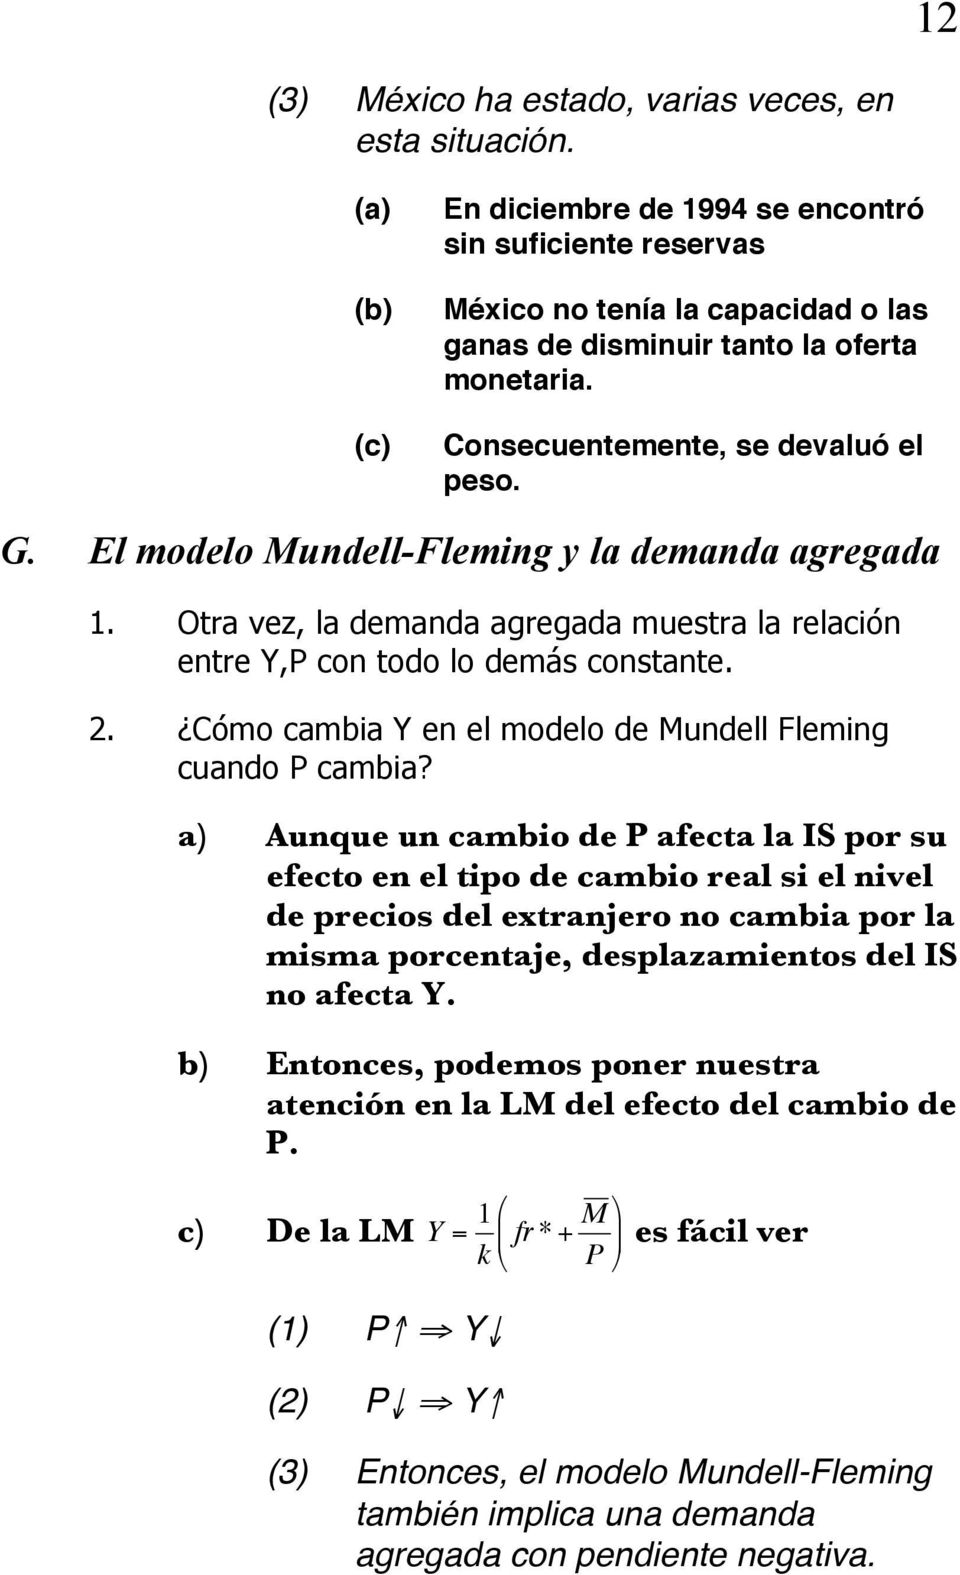 Cómo cambia Y en el modelo de Mundell Fleming cuando P cambia?